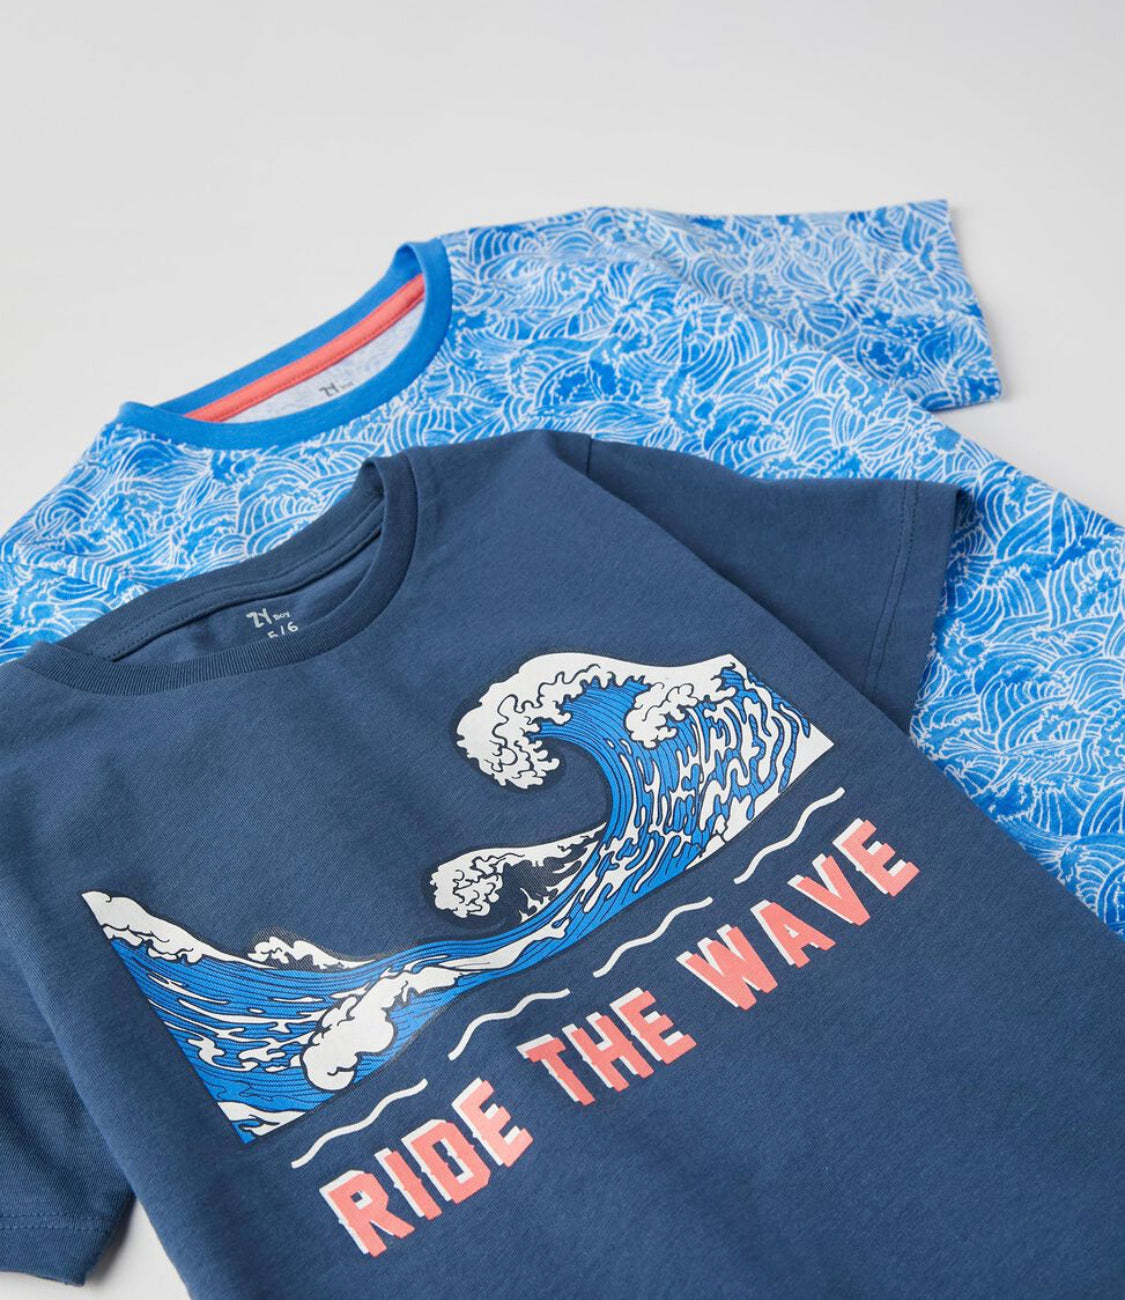 2 Camisetas Para Niño 'Ride The Wave', Azul - lolimariscalmoda